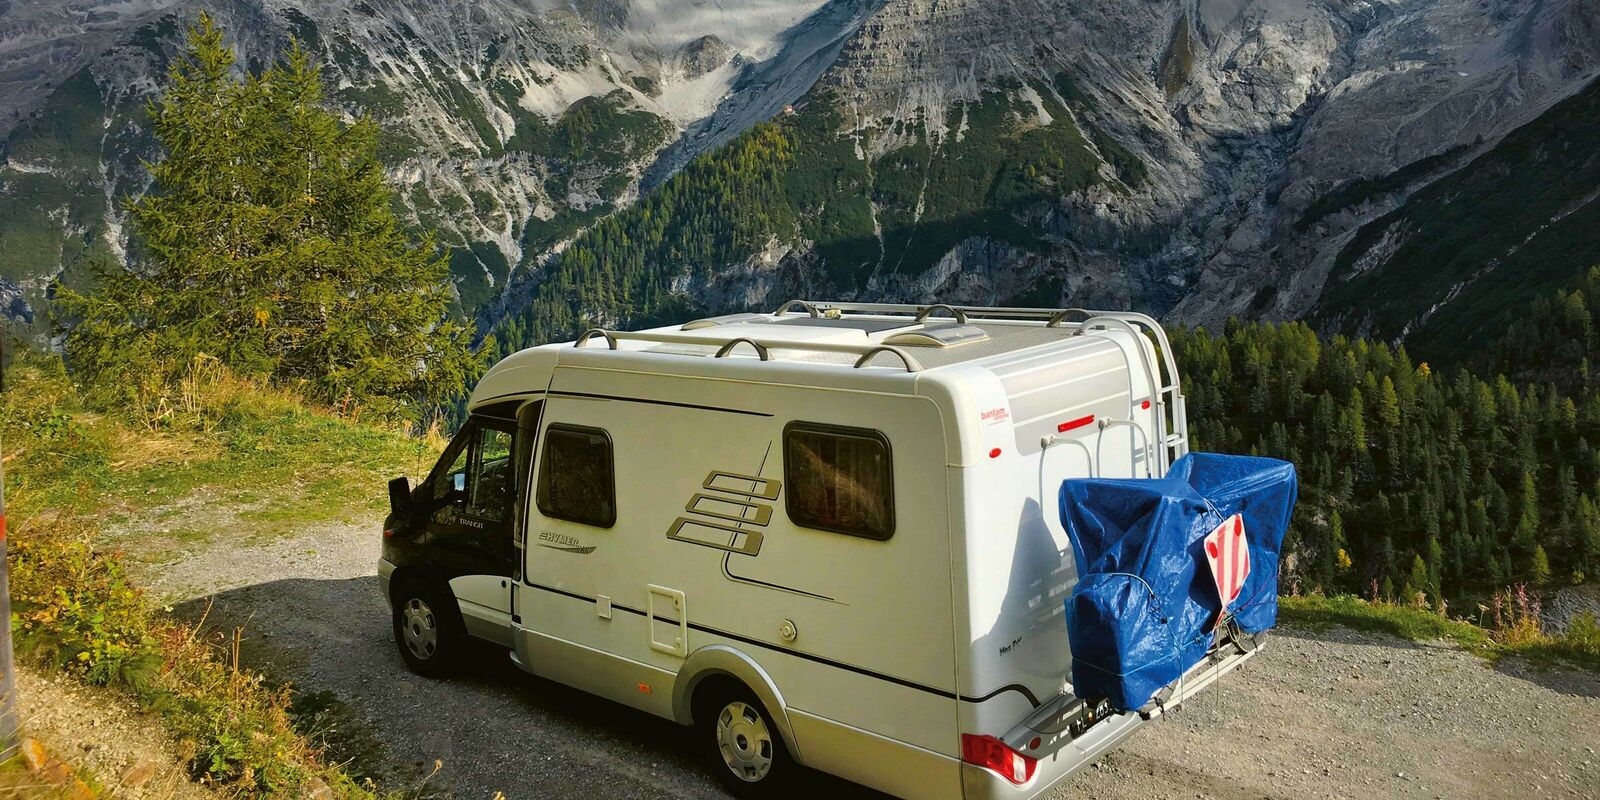 Mobilier camping pliable - Équipement caravaning